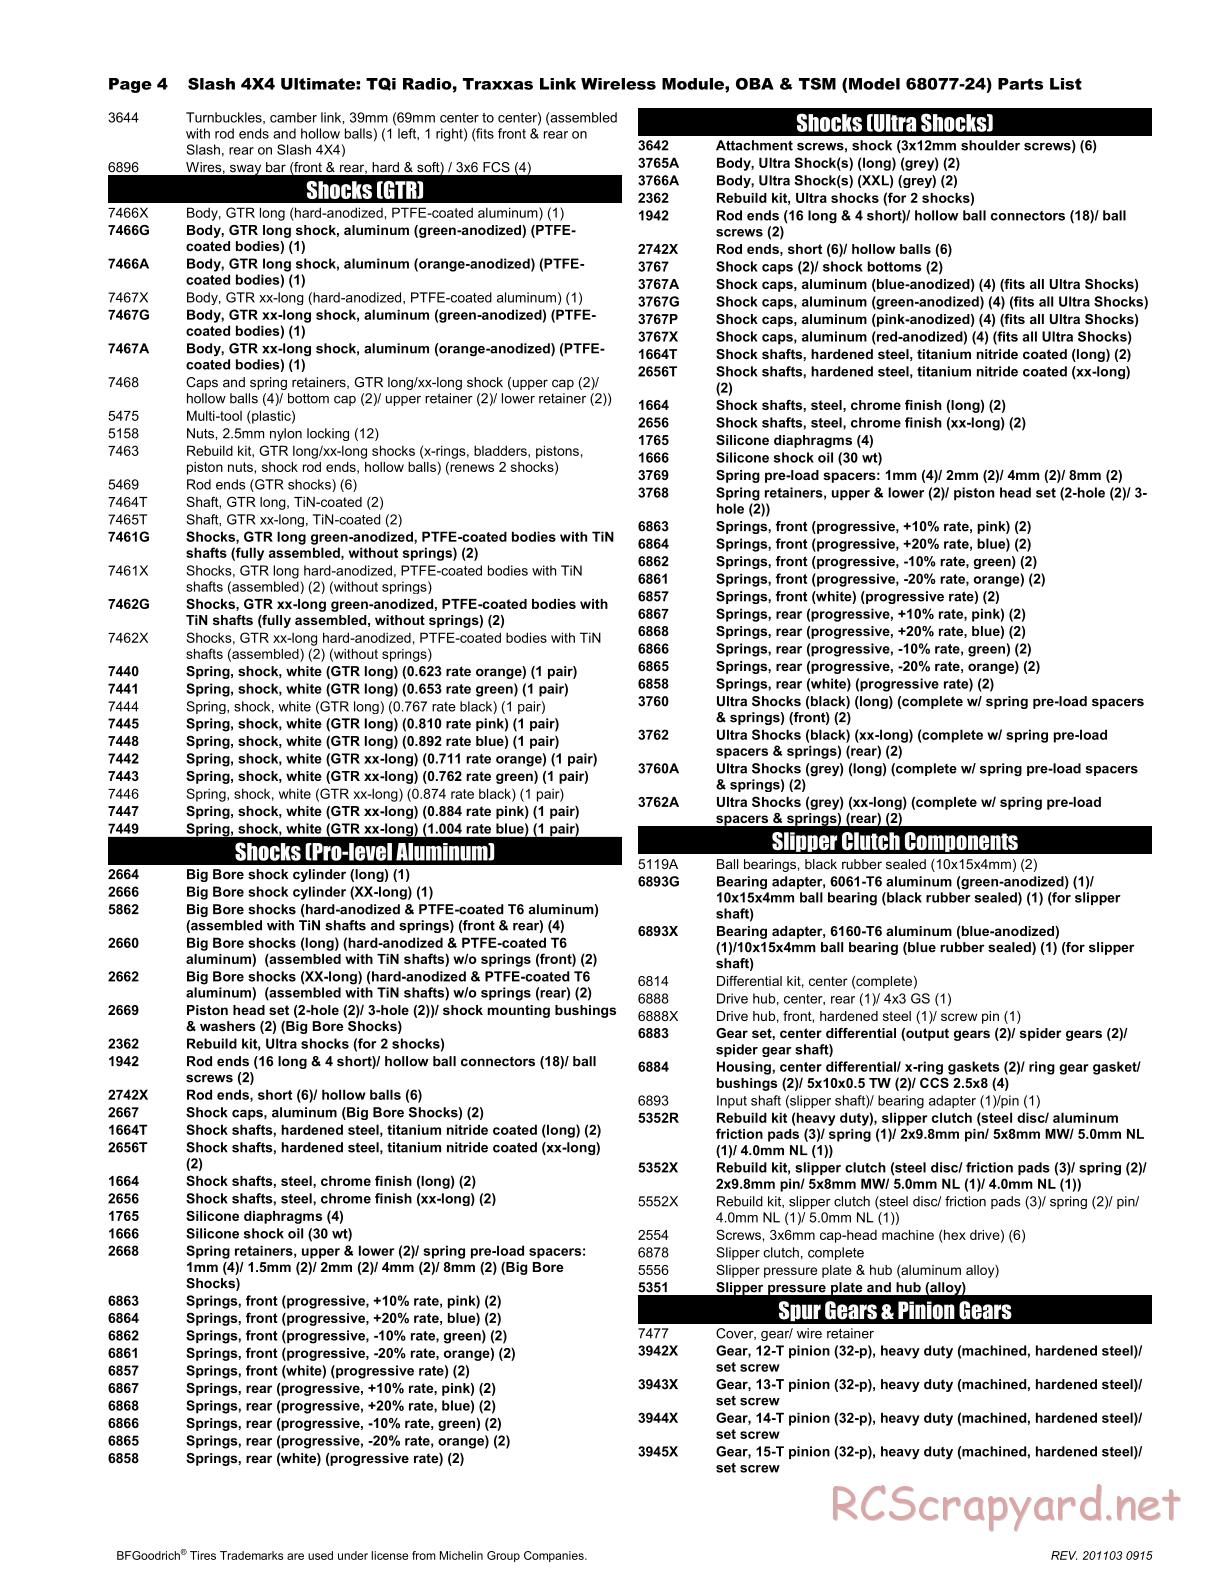 Traxxas - Slash 4x4 Ultimate TSM OBA (2017) - Parts List - Page 4